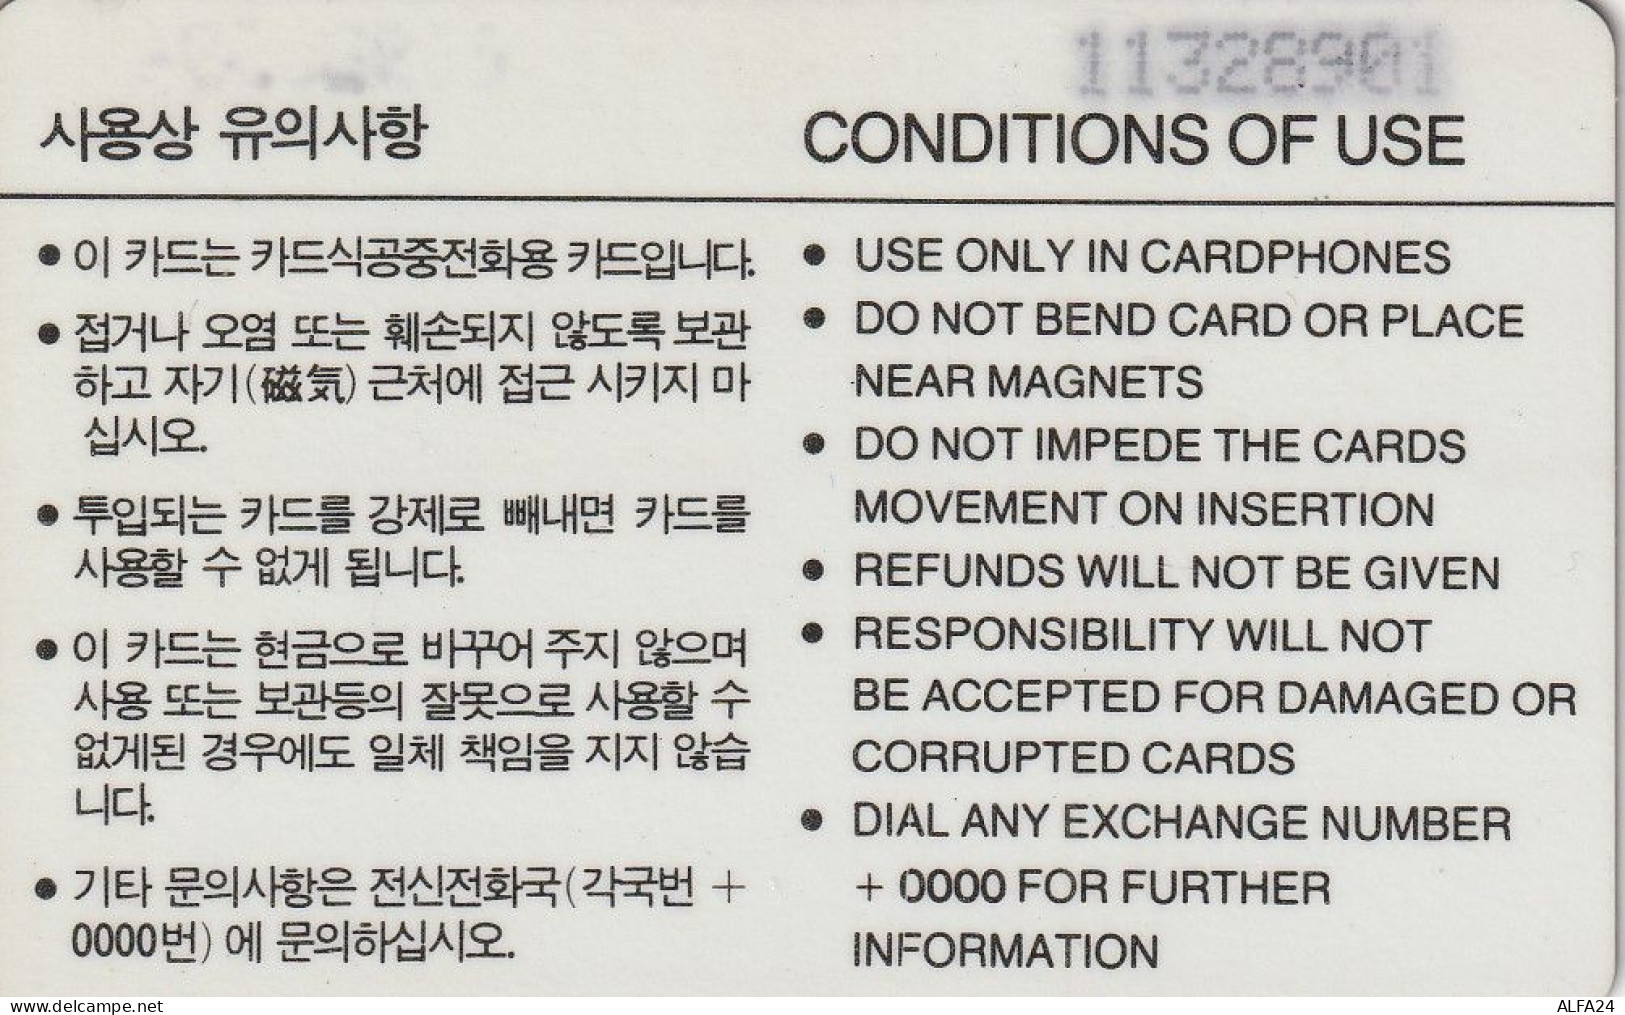 PHONE CARD COREA SUD  (E55.18.3 - Corea Del Sud